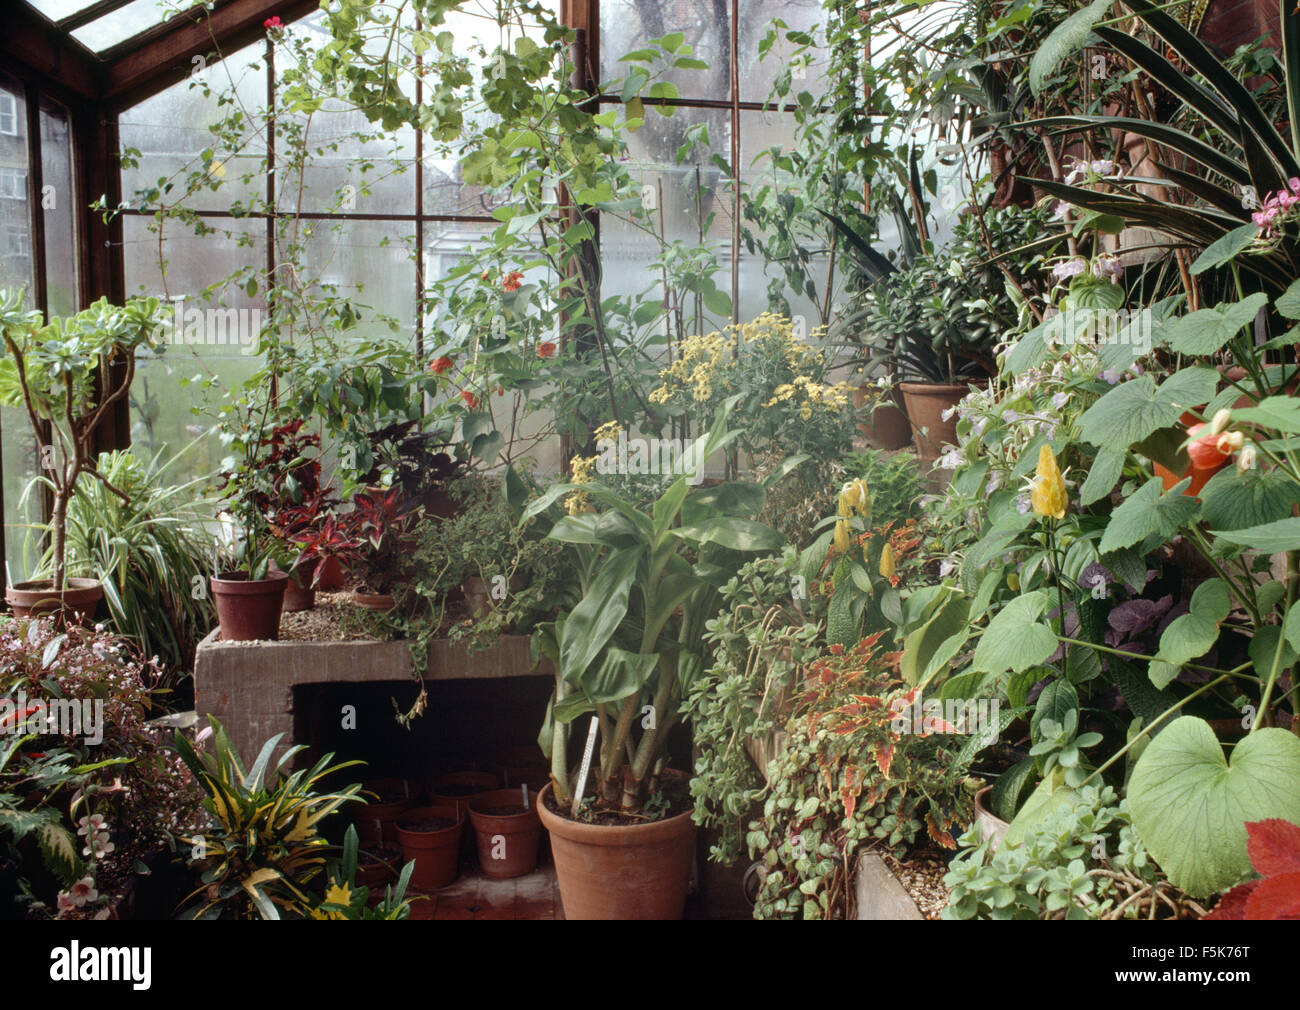 Las plantas en macetas dentro de un invernadero Foto de stock